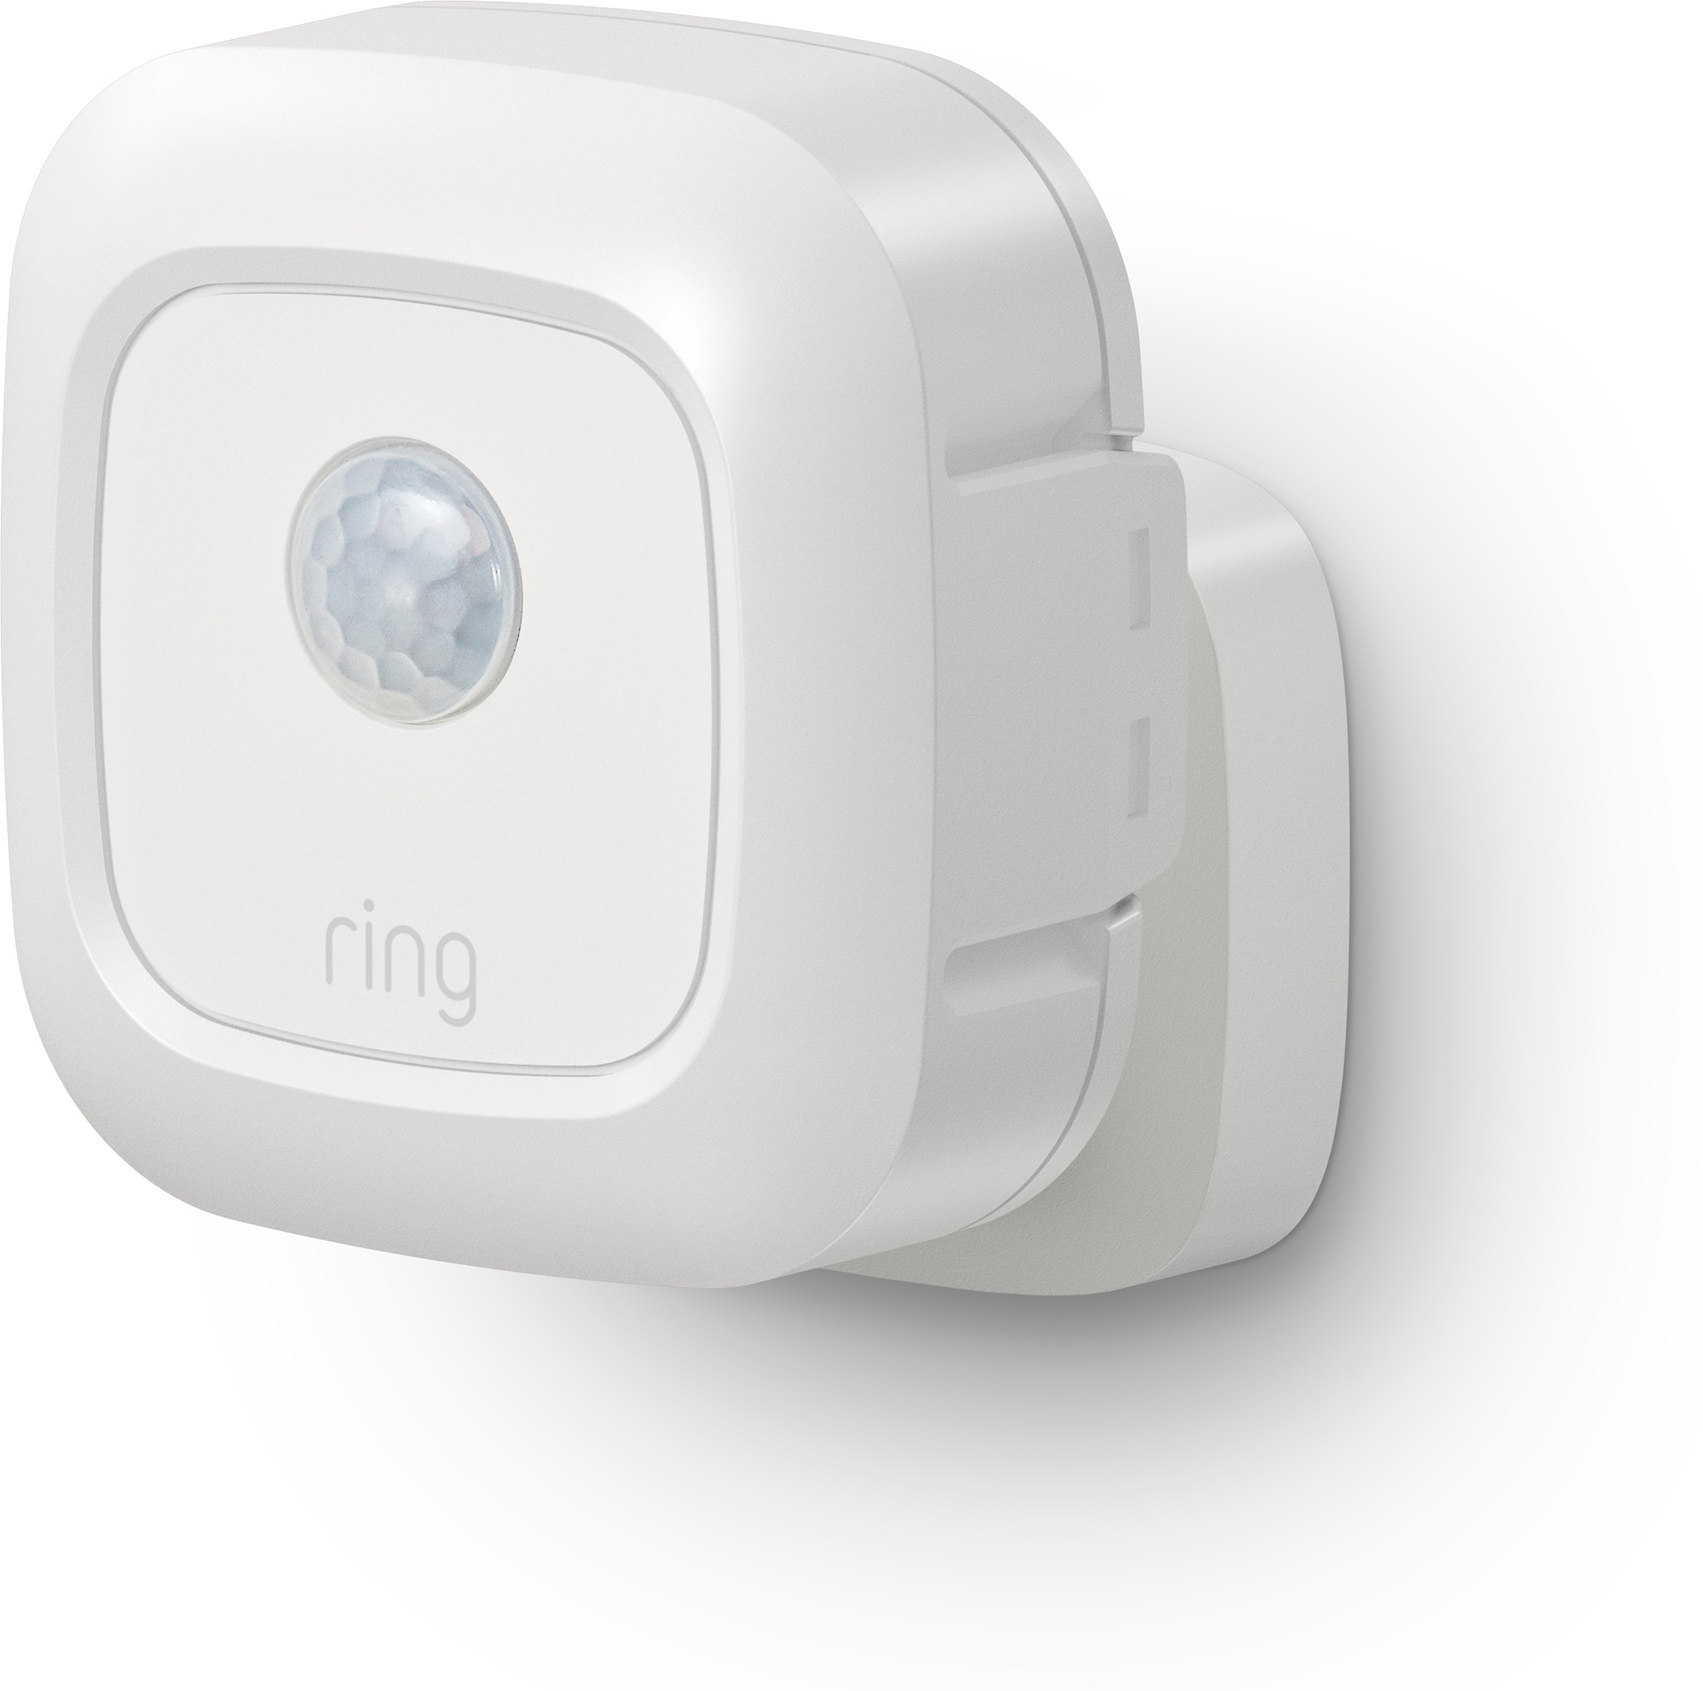 Ring Smart Lighting Motion Sensor (White) Batterypowered outdoor